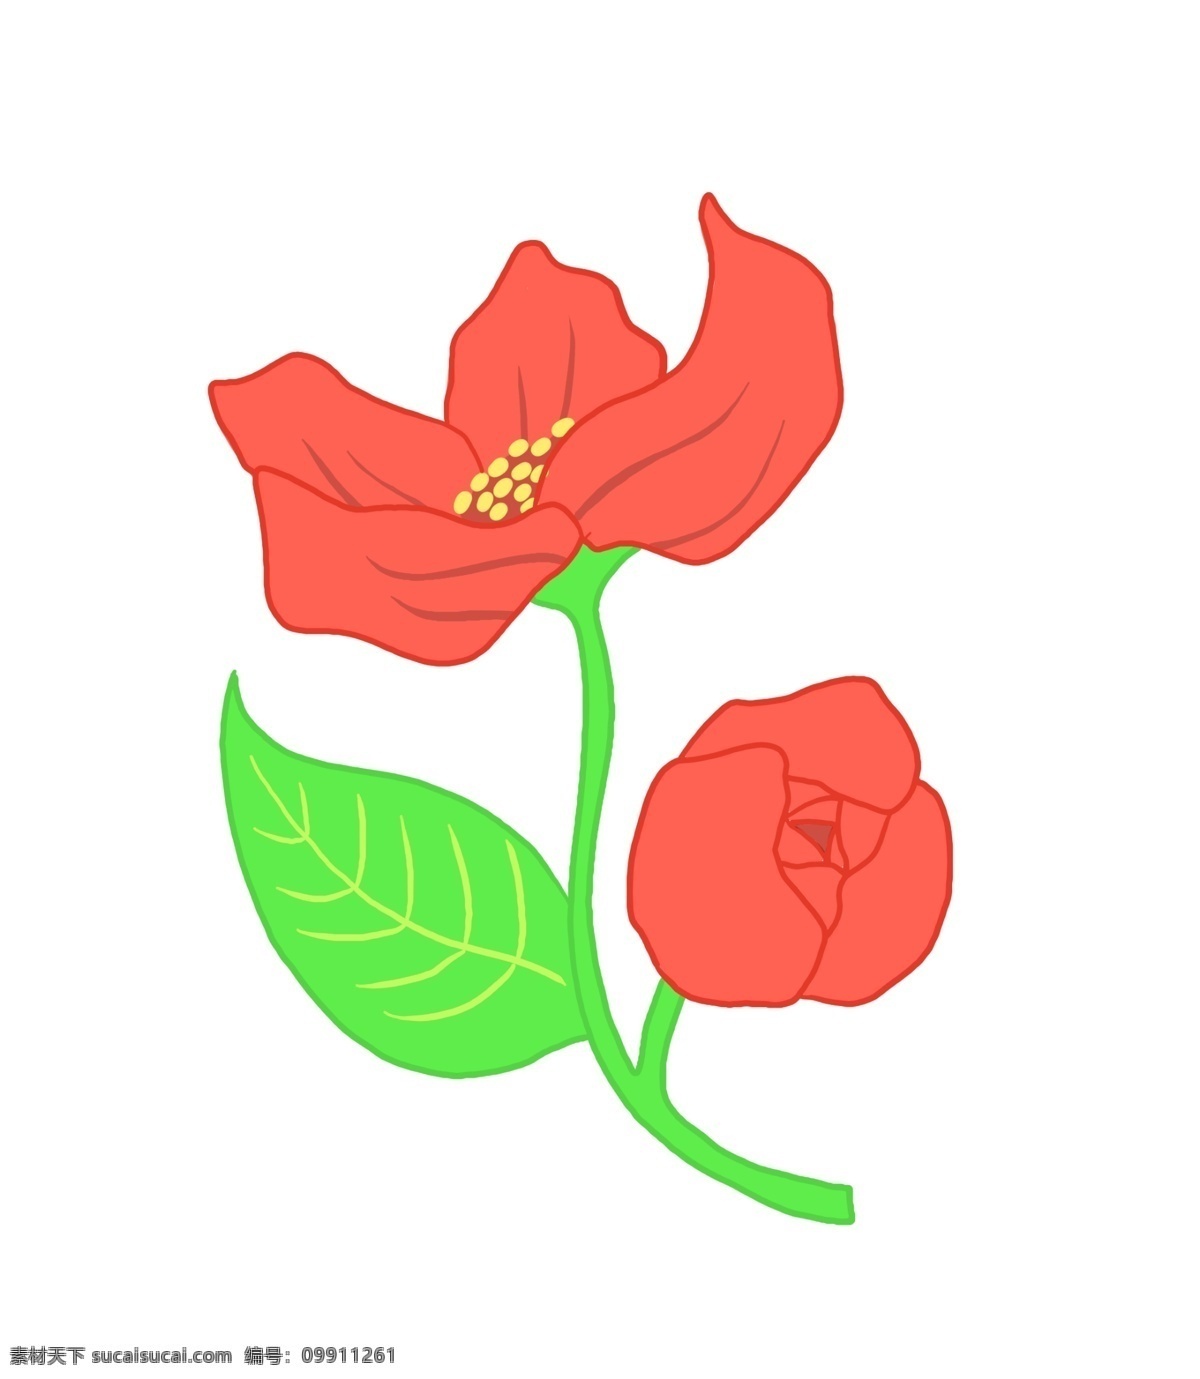 玫瑰 花朵 卡通 插画 玫瑰的花朵 卡通插画 花朵插画 植物插画 鲜花花束 花朵装饰 绽放的花朵